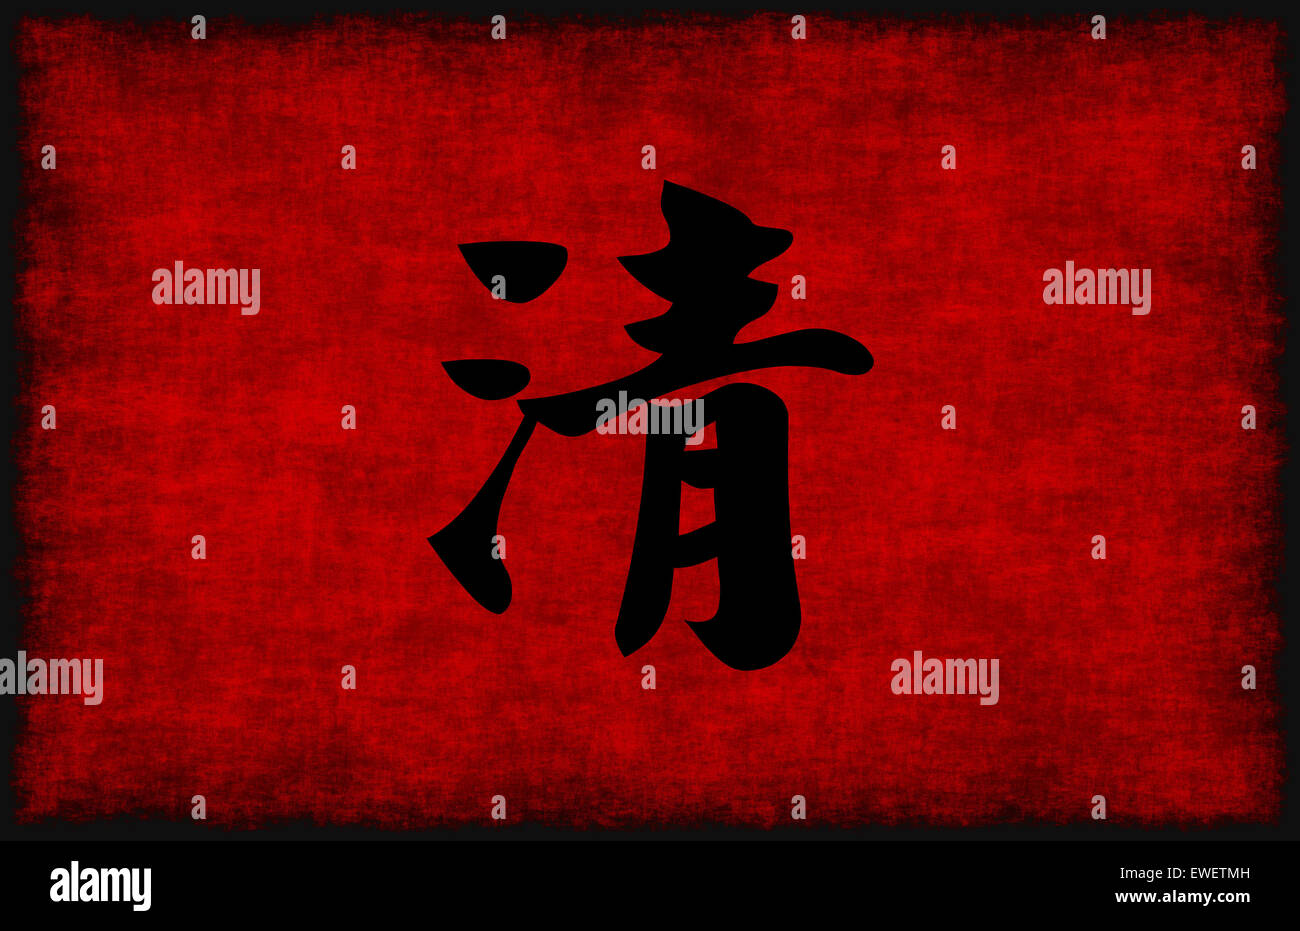 Symbole Calligraphie chinoise pour la clarté en rouge et noir Banque D'Images